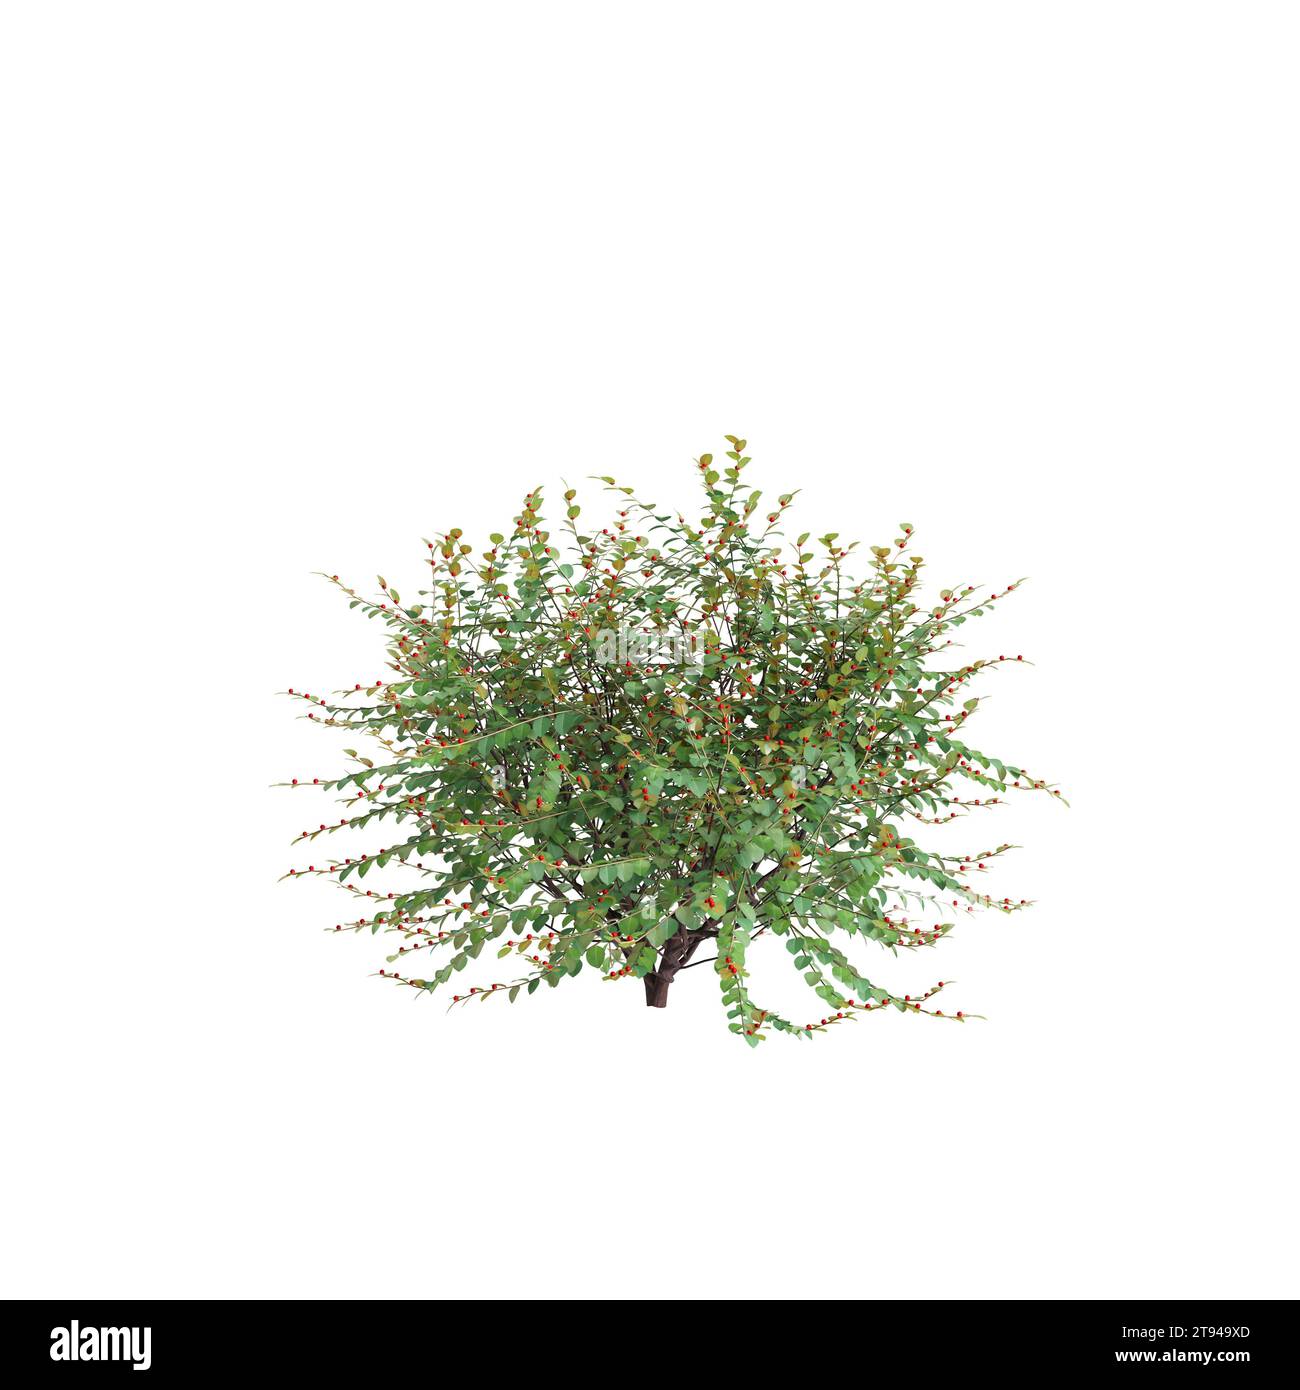 3d illustration of Breynia Vitis-Idaea bush isolated on white baclground Stock Photo